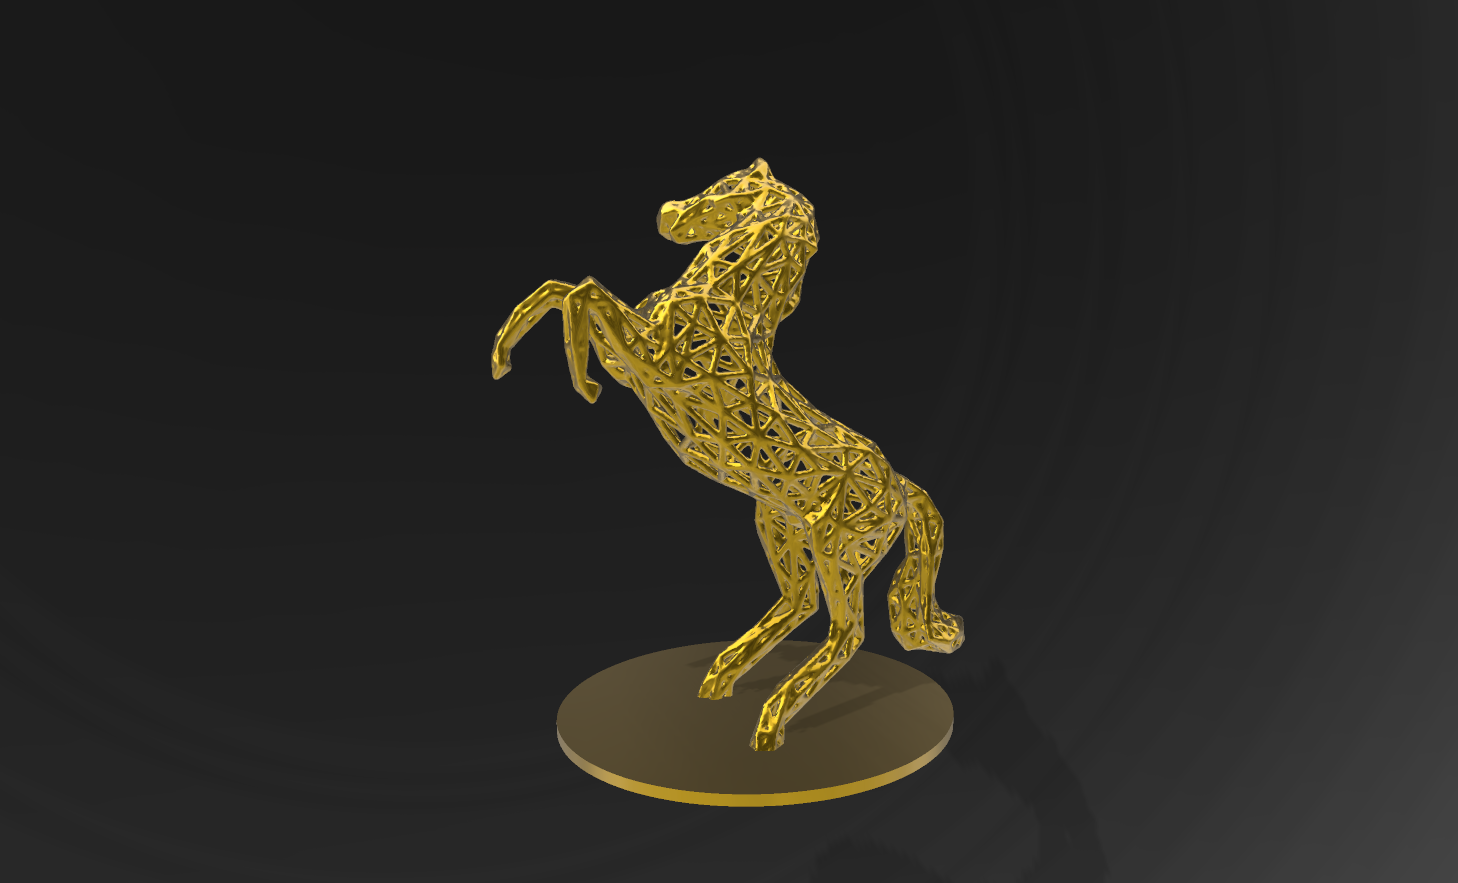 pres523.png Télécharger fichier STL gratuit Horse Voronoï • Design à imprimer en 3D, motek